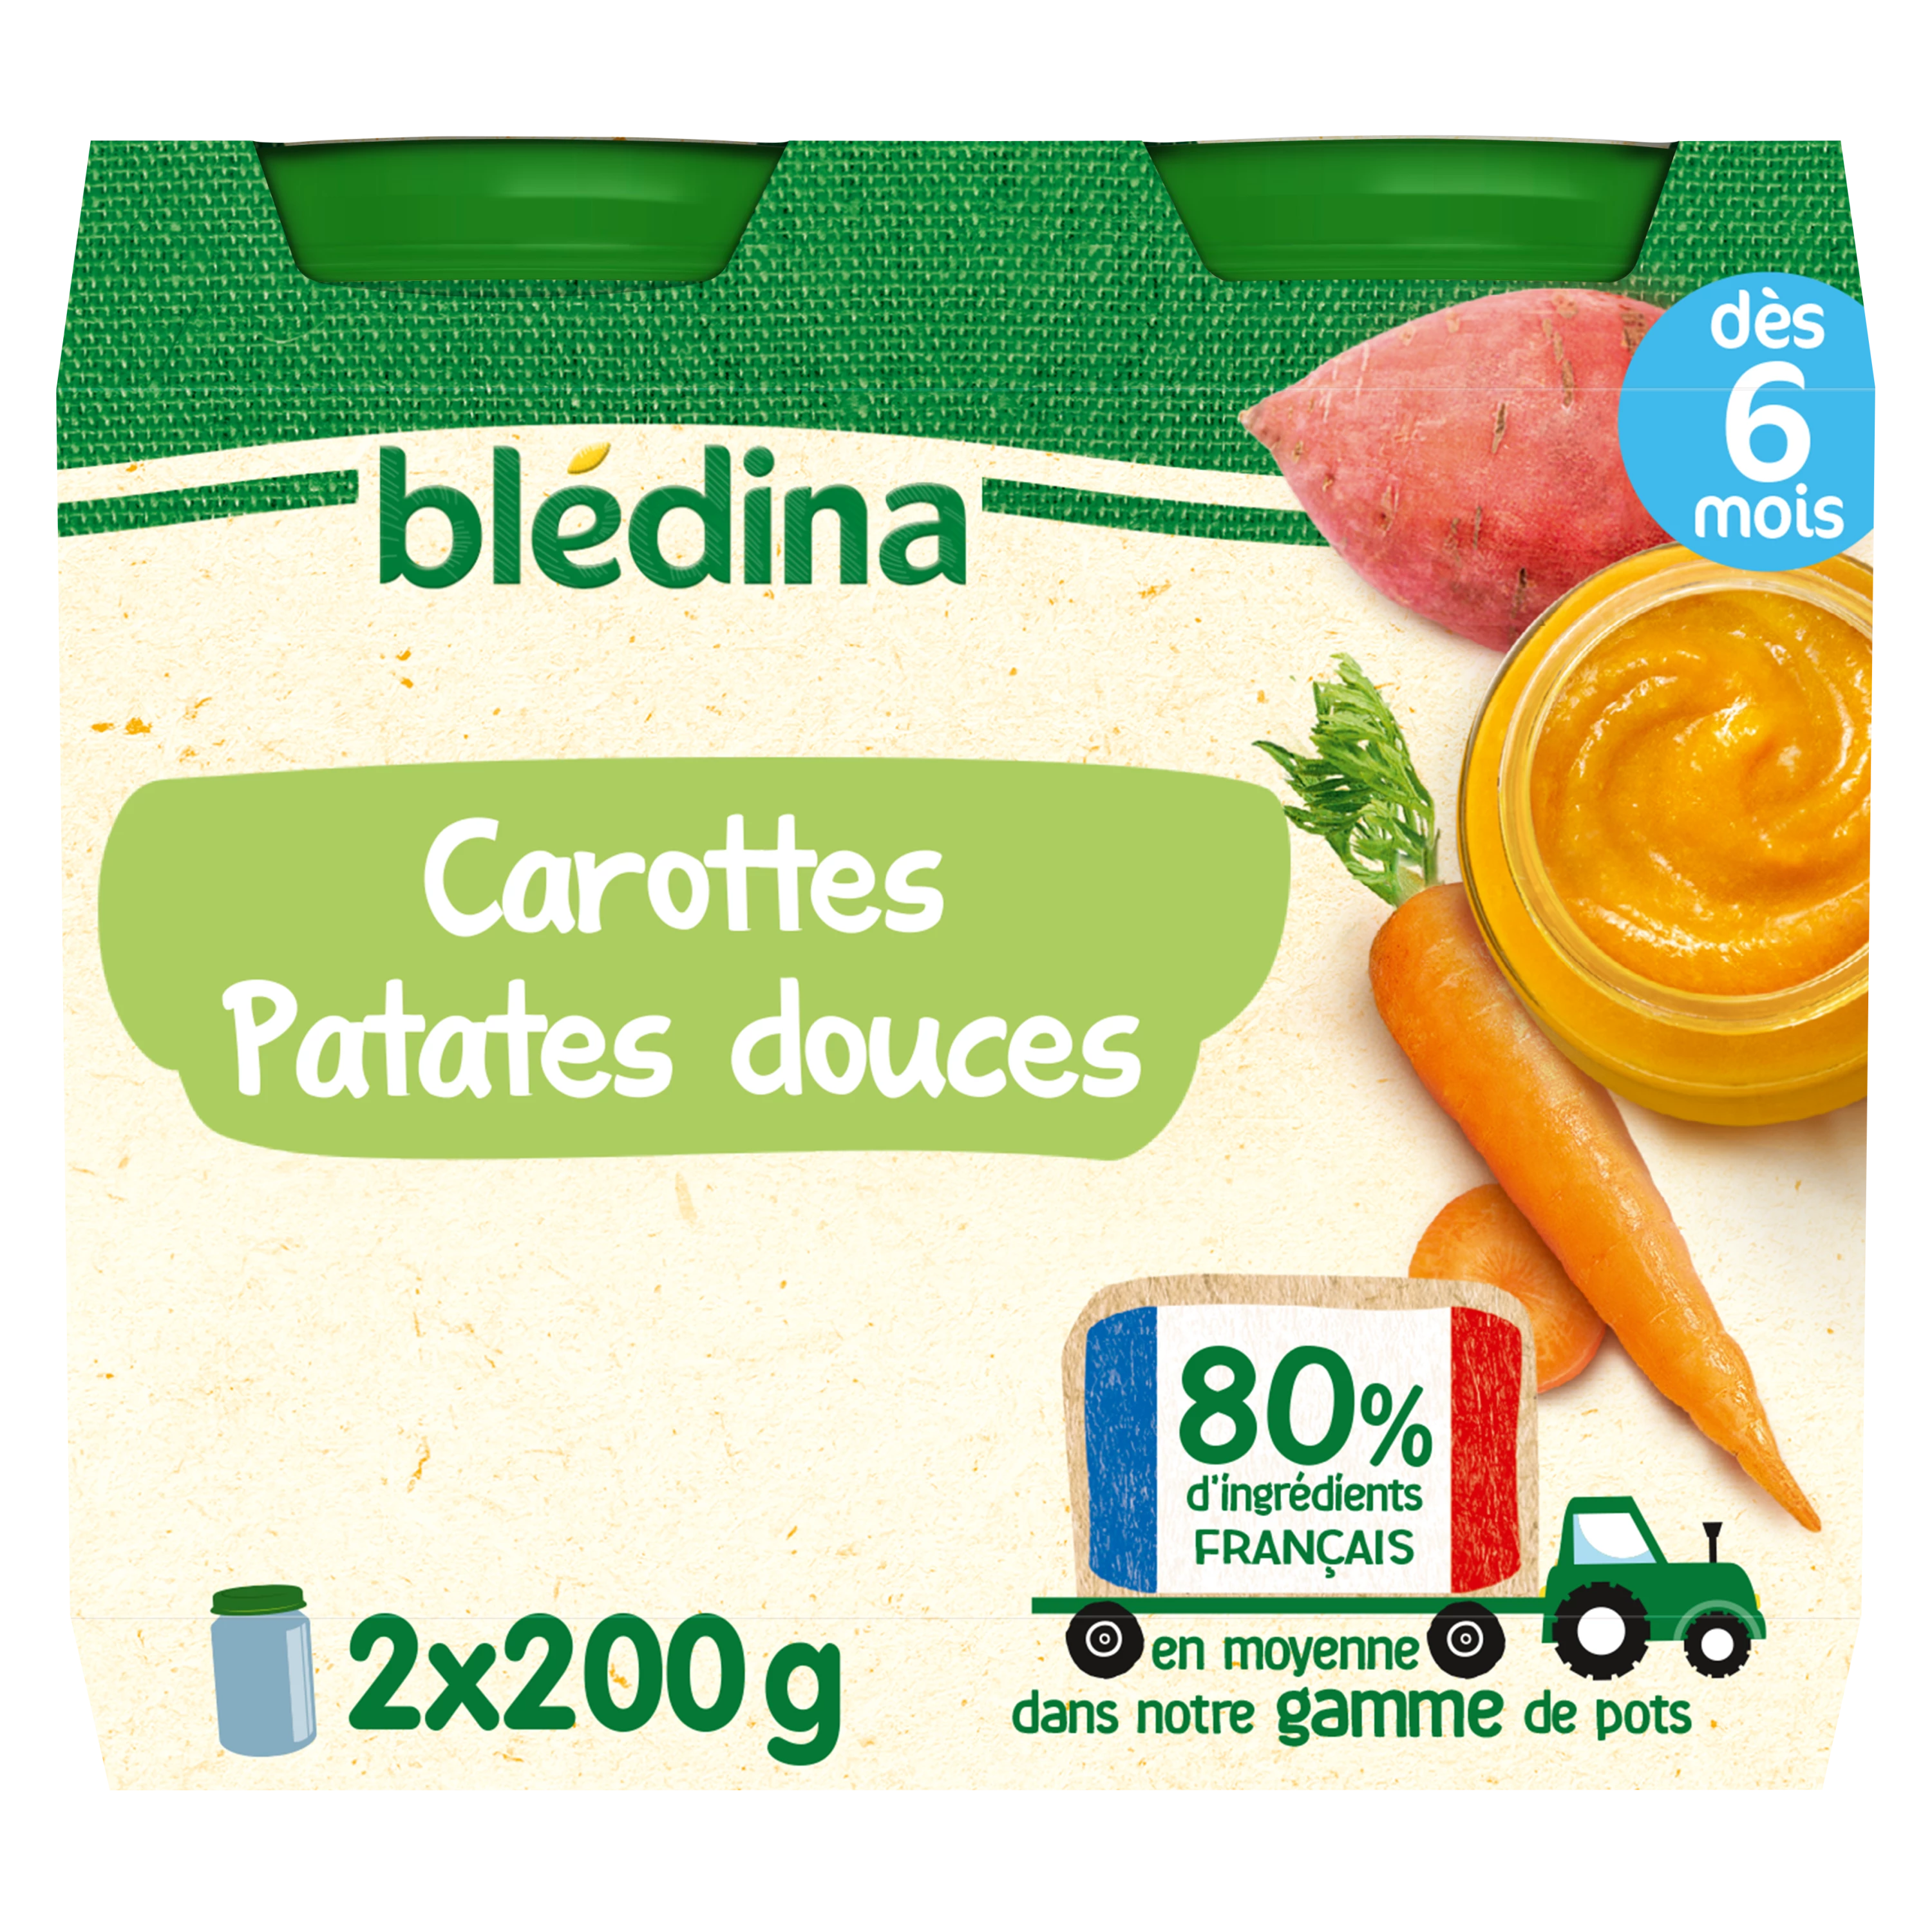 Plat bébé soir dès 8 mois carottes patate douce semoule lait Blédiner  BLEDINA